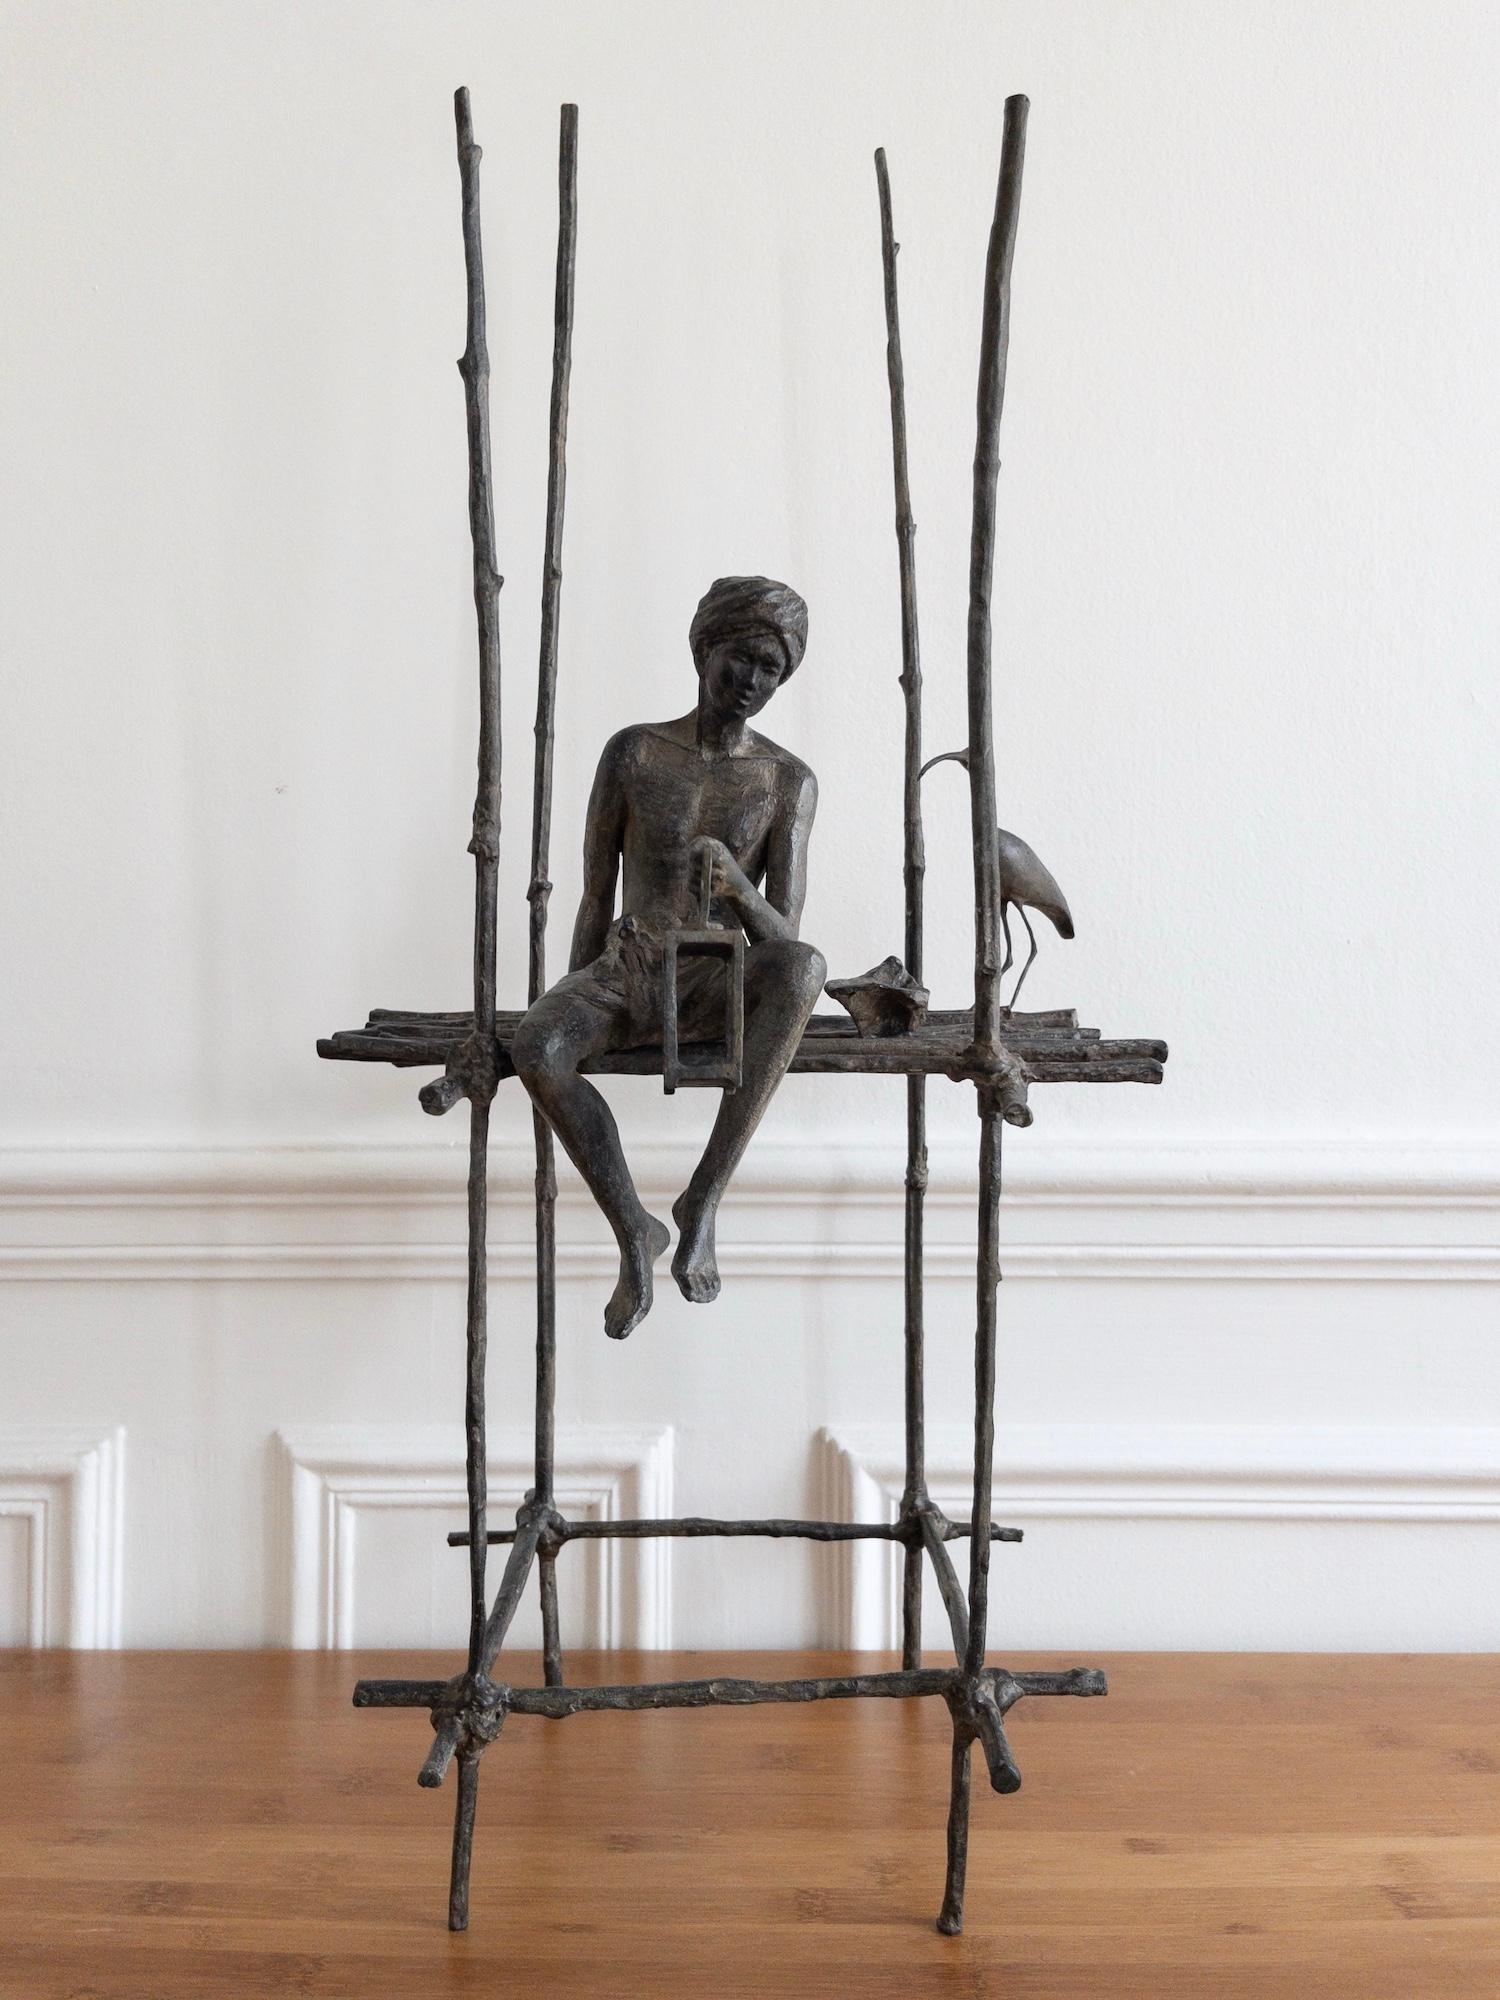 Der Gesang der Stelzen (mit Ibis) ist eine Bronzeskulptur der französischen zeitgenössischen Künstlerin Marine de Soos mit den Maßen 70 × 30 × 25 cm (27,6 × 11,8 × 9,8 in). 
Die Skulptur ist signiert und nummeriert, gehört zu einer limitierten